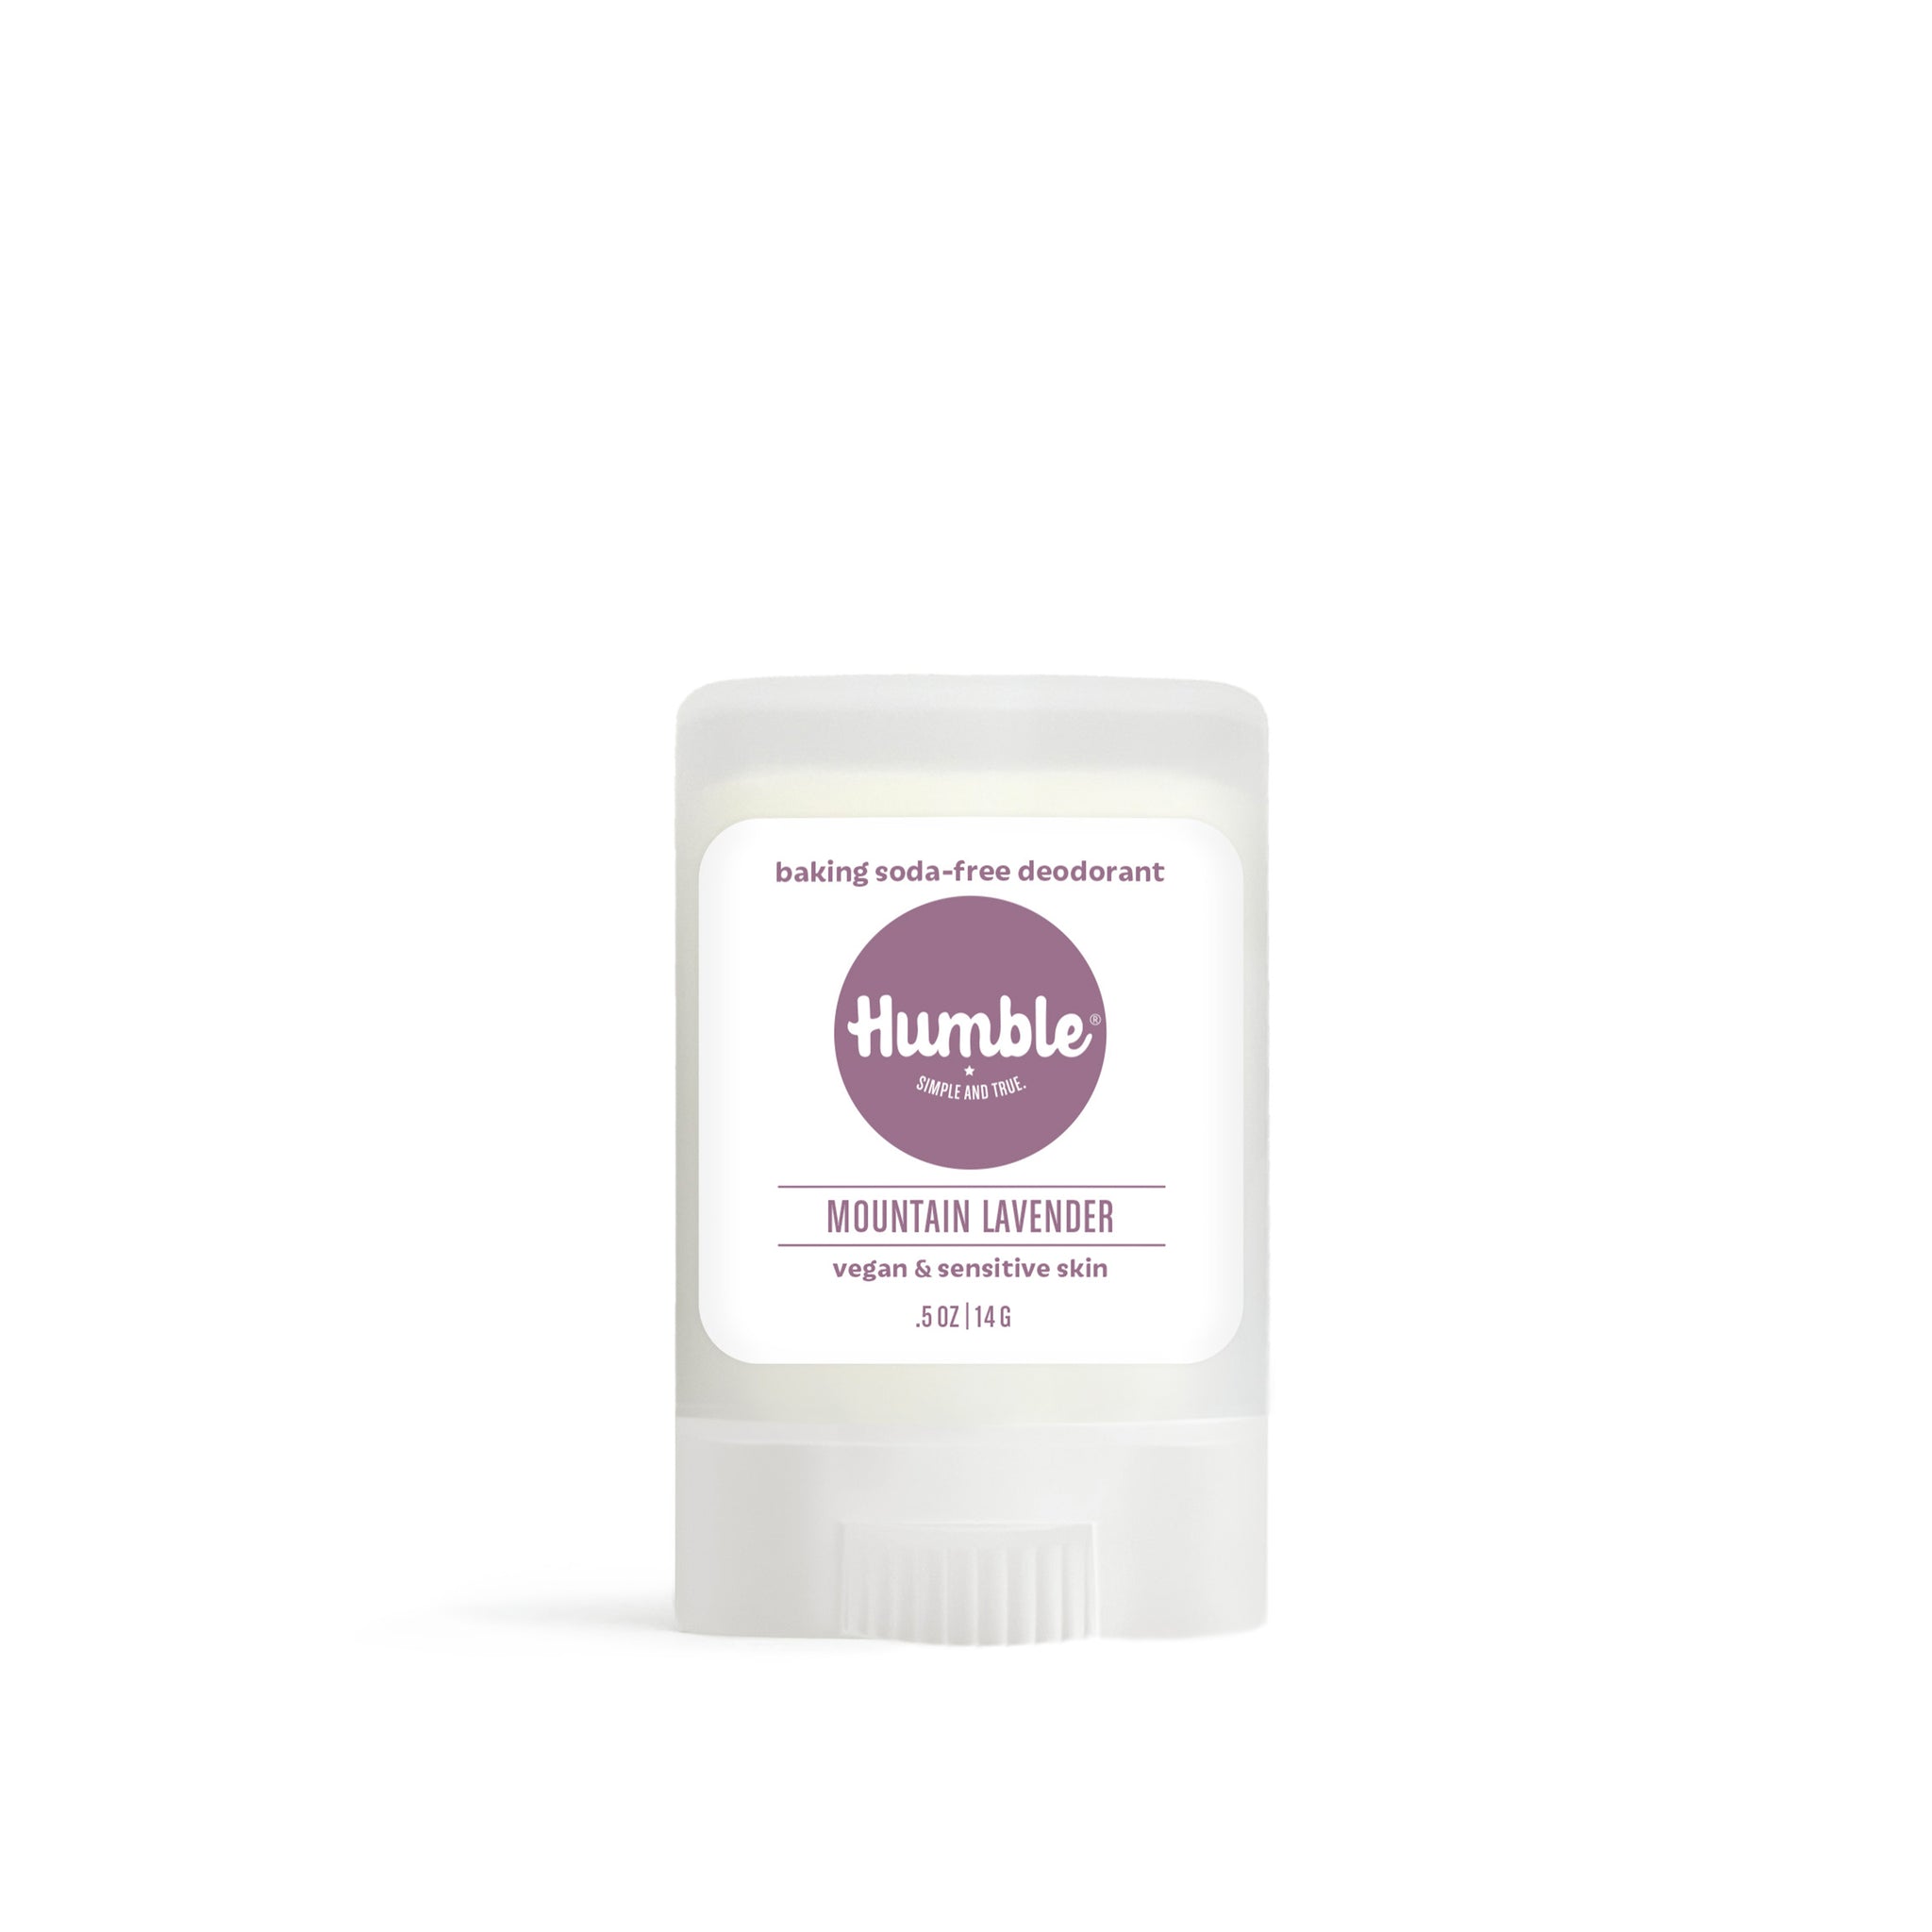 Mountain Lavender - Vegan & Sensitive Skin Natural Deodorant 14g